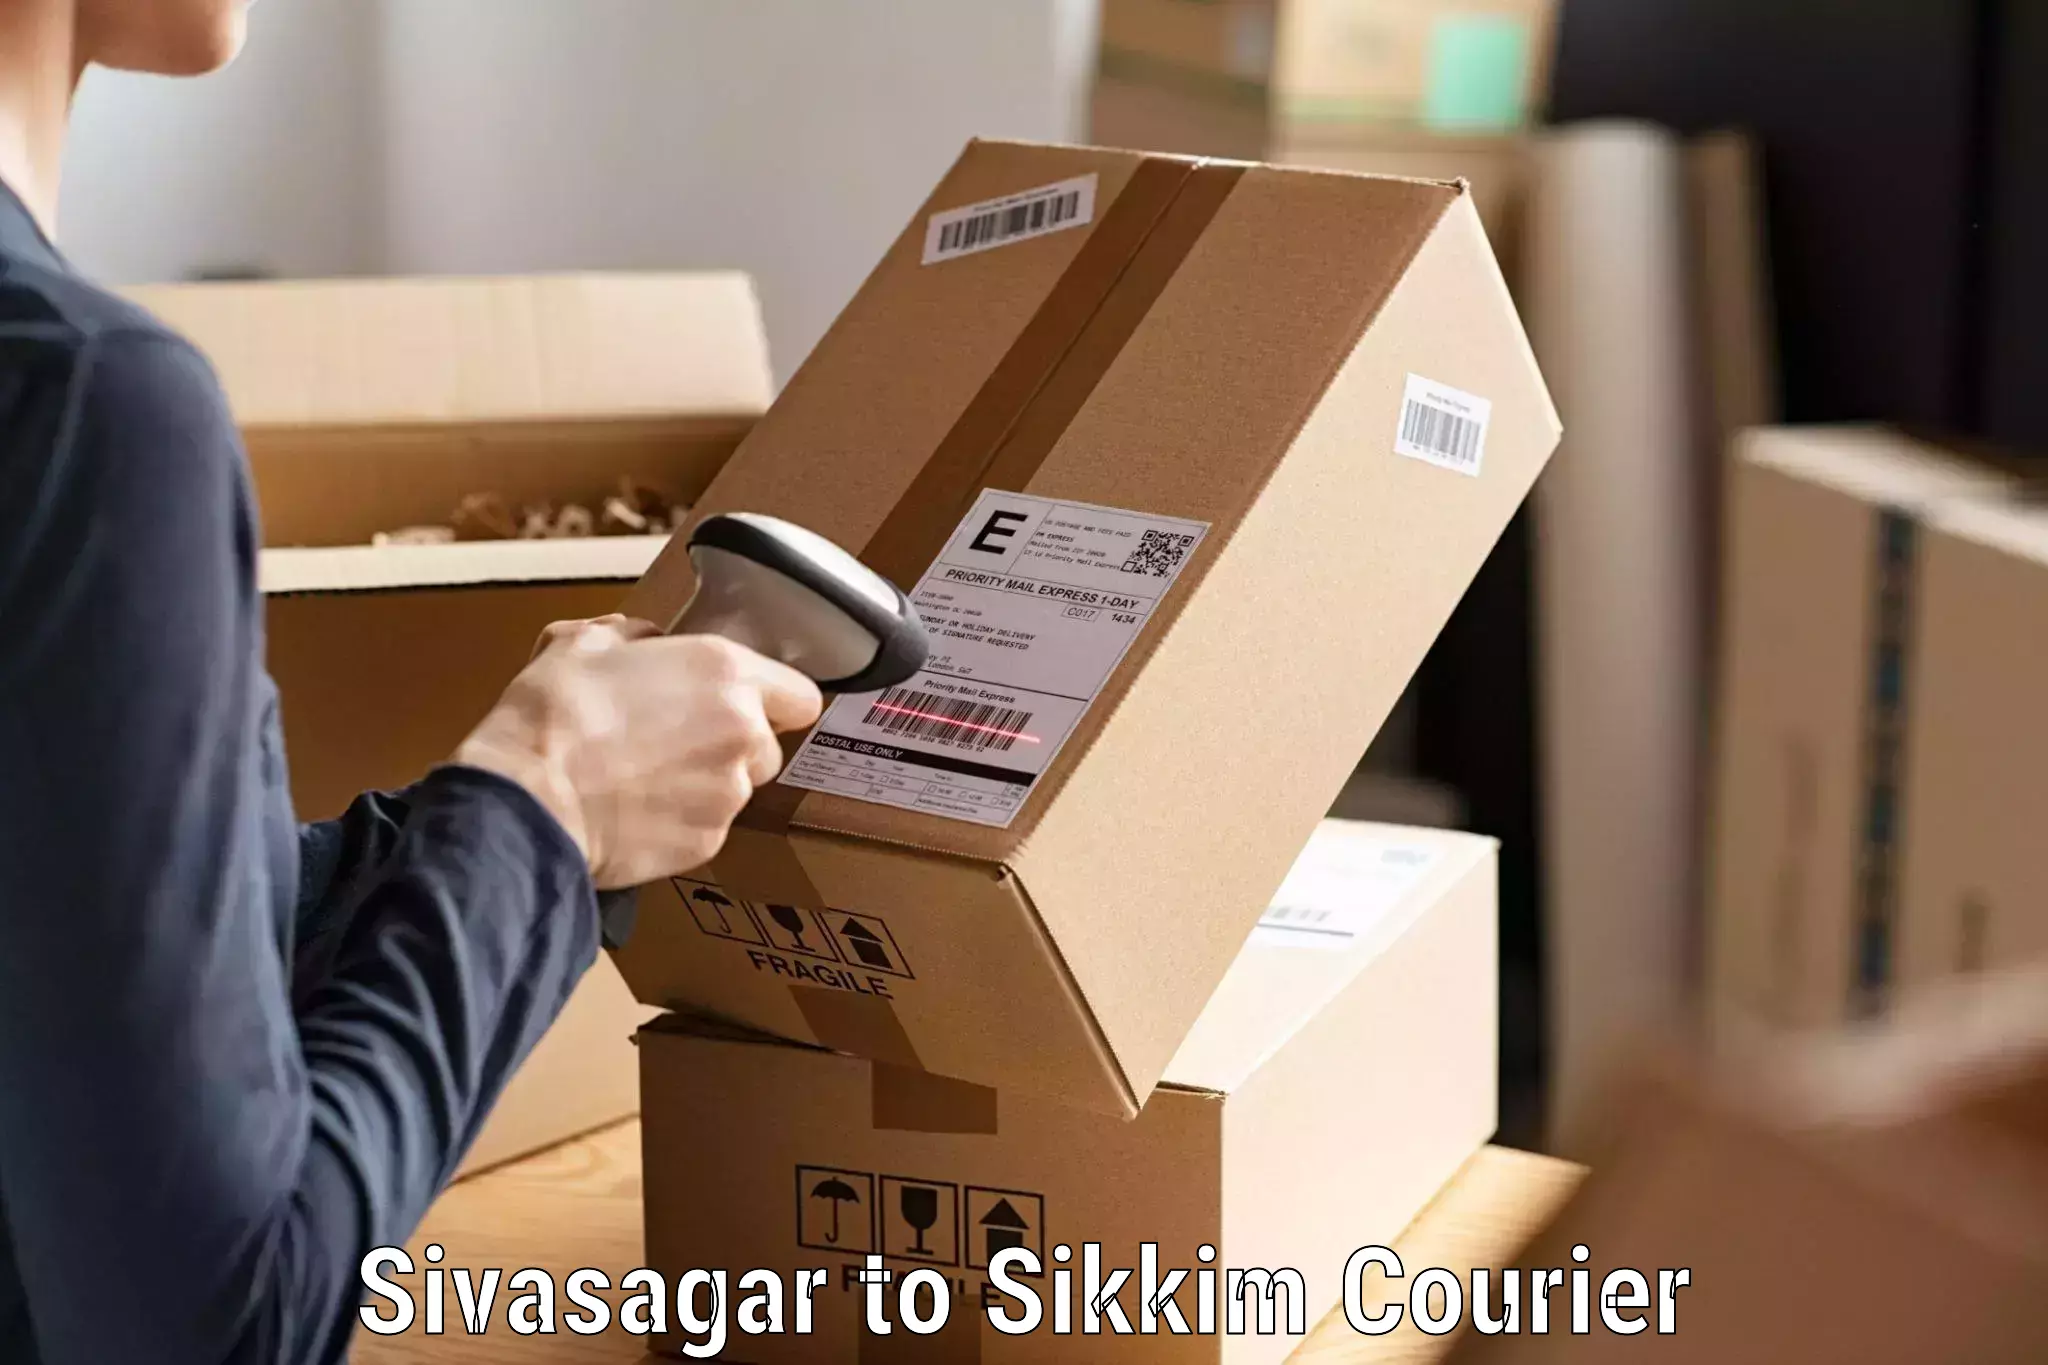 Express courier capabilities Sivasagar to Gangtok